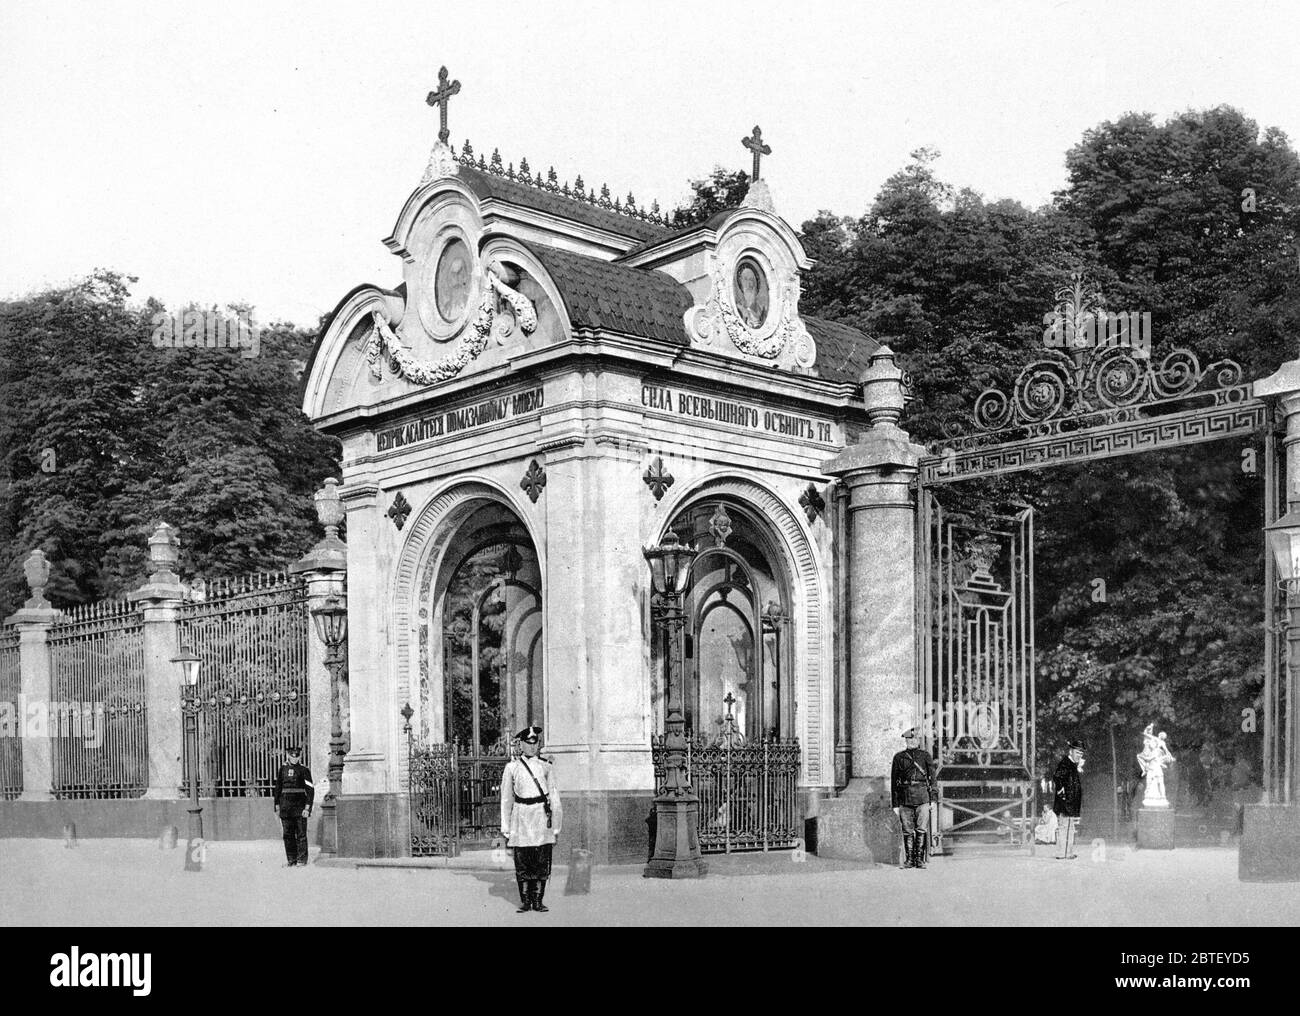 Alexander II's chapel, St. Petersburg, Russia ca. 1890-1900 Stock Photo